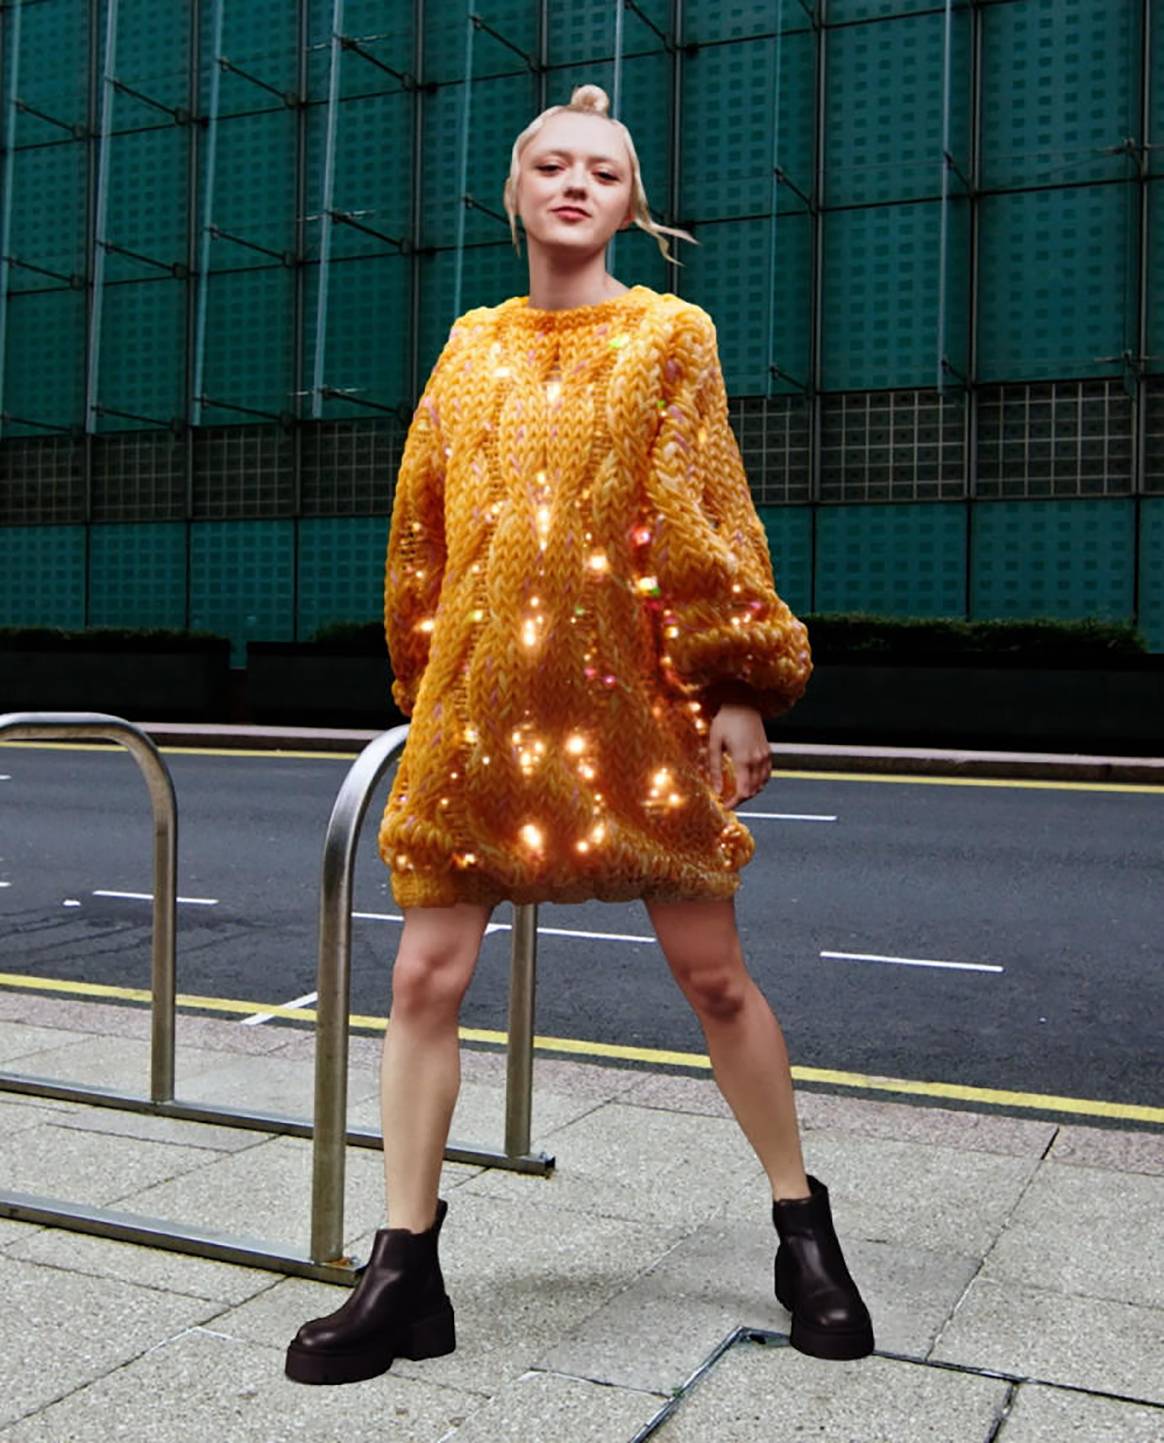 Photo Credits: Maisie Williams, con uno de los diseños de la colección Virtual Fashion diseñada por H&M en colaboración con DressX. H&M, página oficial.